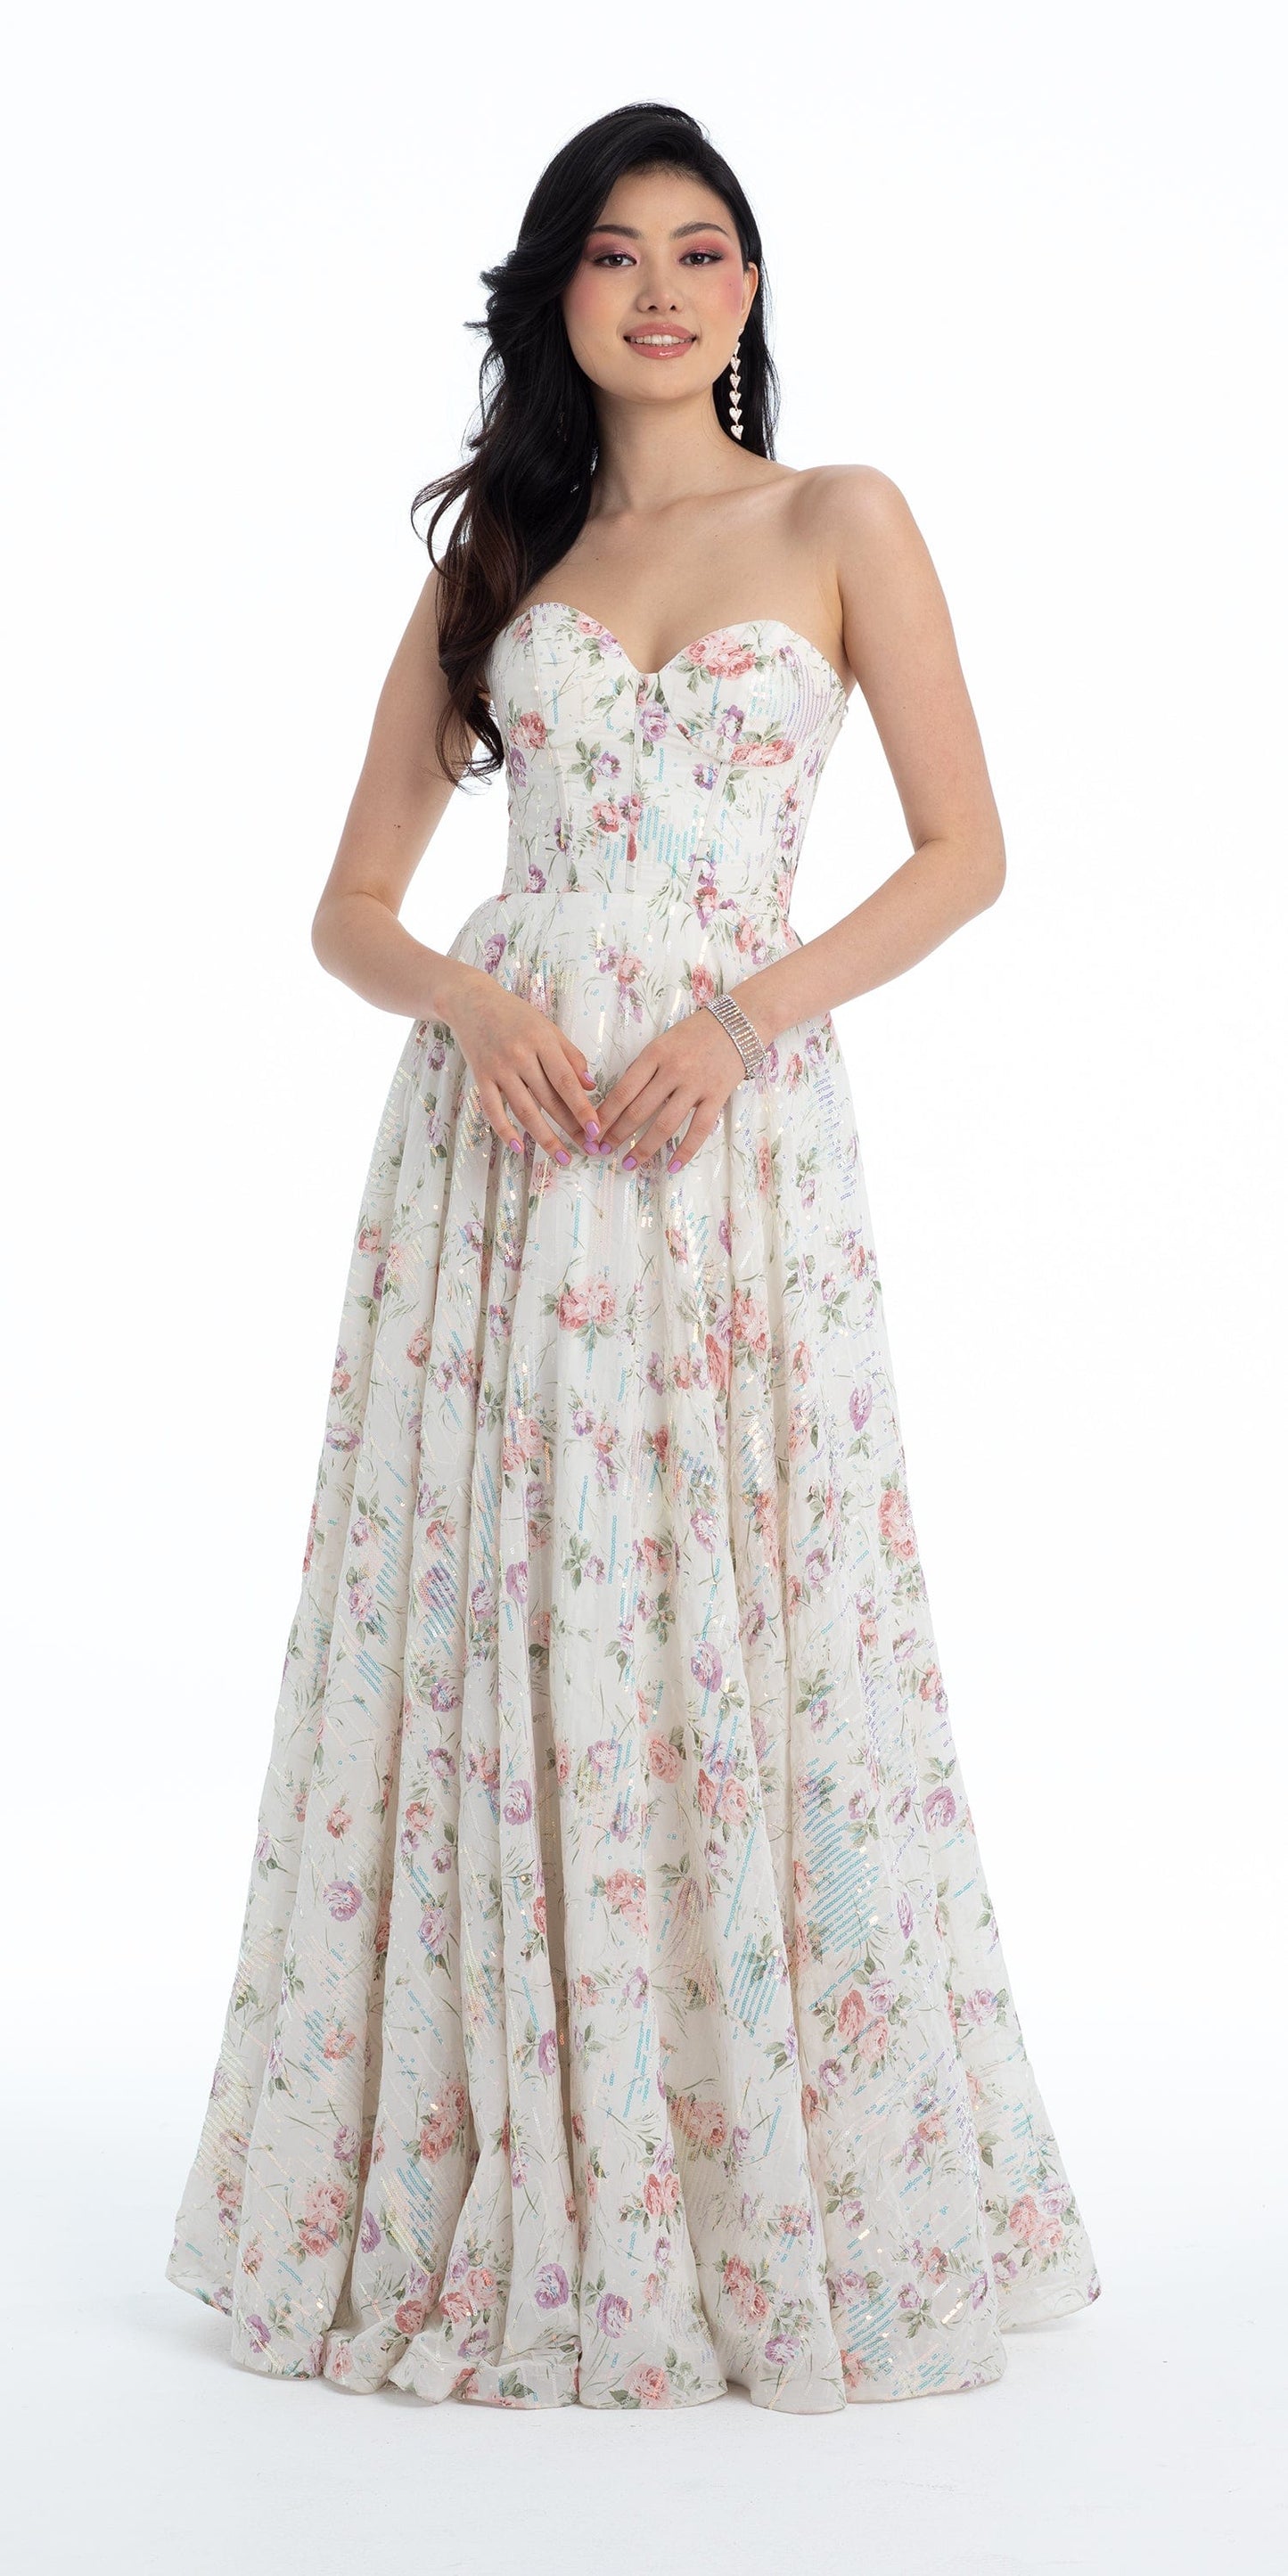 Camille La Vie Sequin Floral Corset A Line Dress missy / 0 / ivory